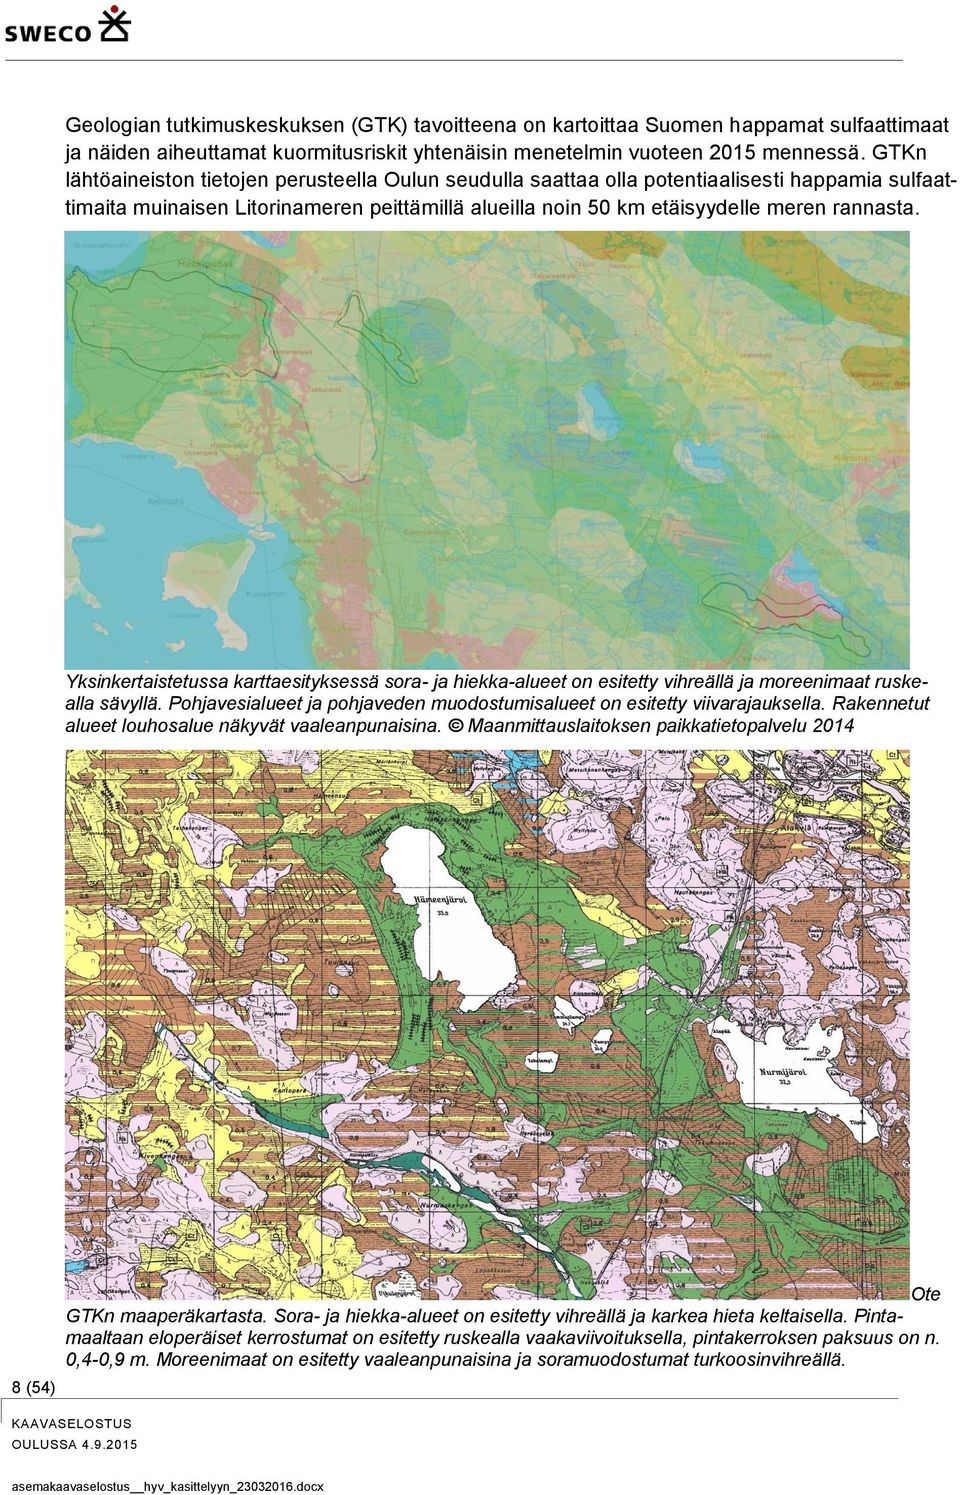 Yksinkertaistetussa karttaesityksessä sora- ja hiekka-alueet on esitetty vihreällä ja moreenimaat ruskealla sävyllä. Pohjavesialueet ja pohjaveden muodostumisalueet on esitetty viivarajauksella.